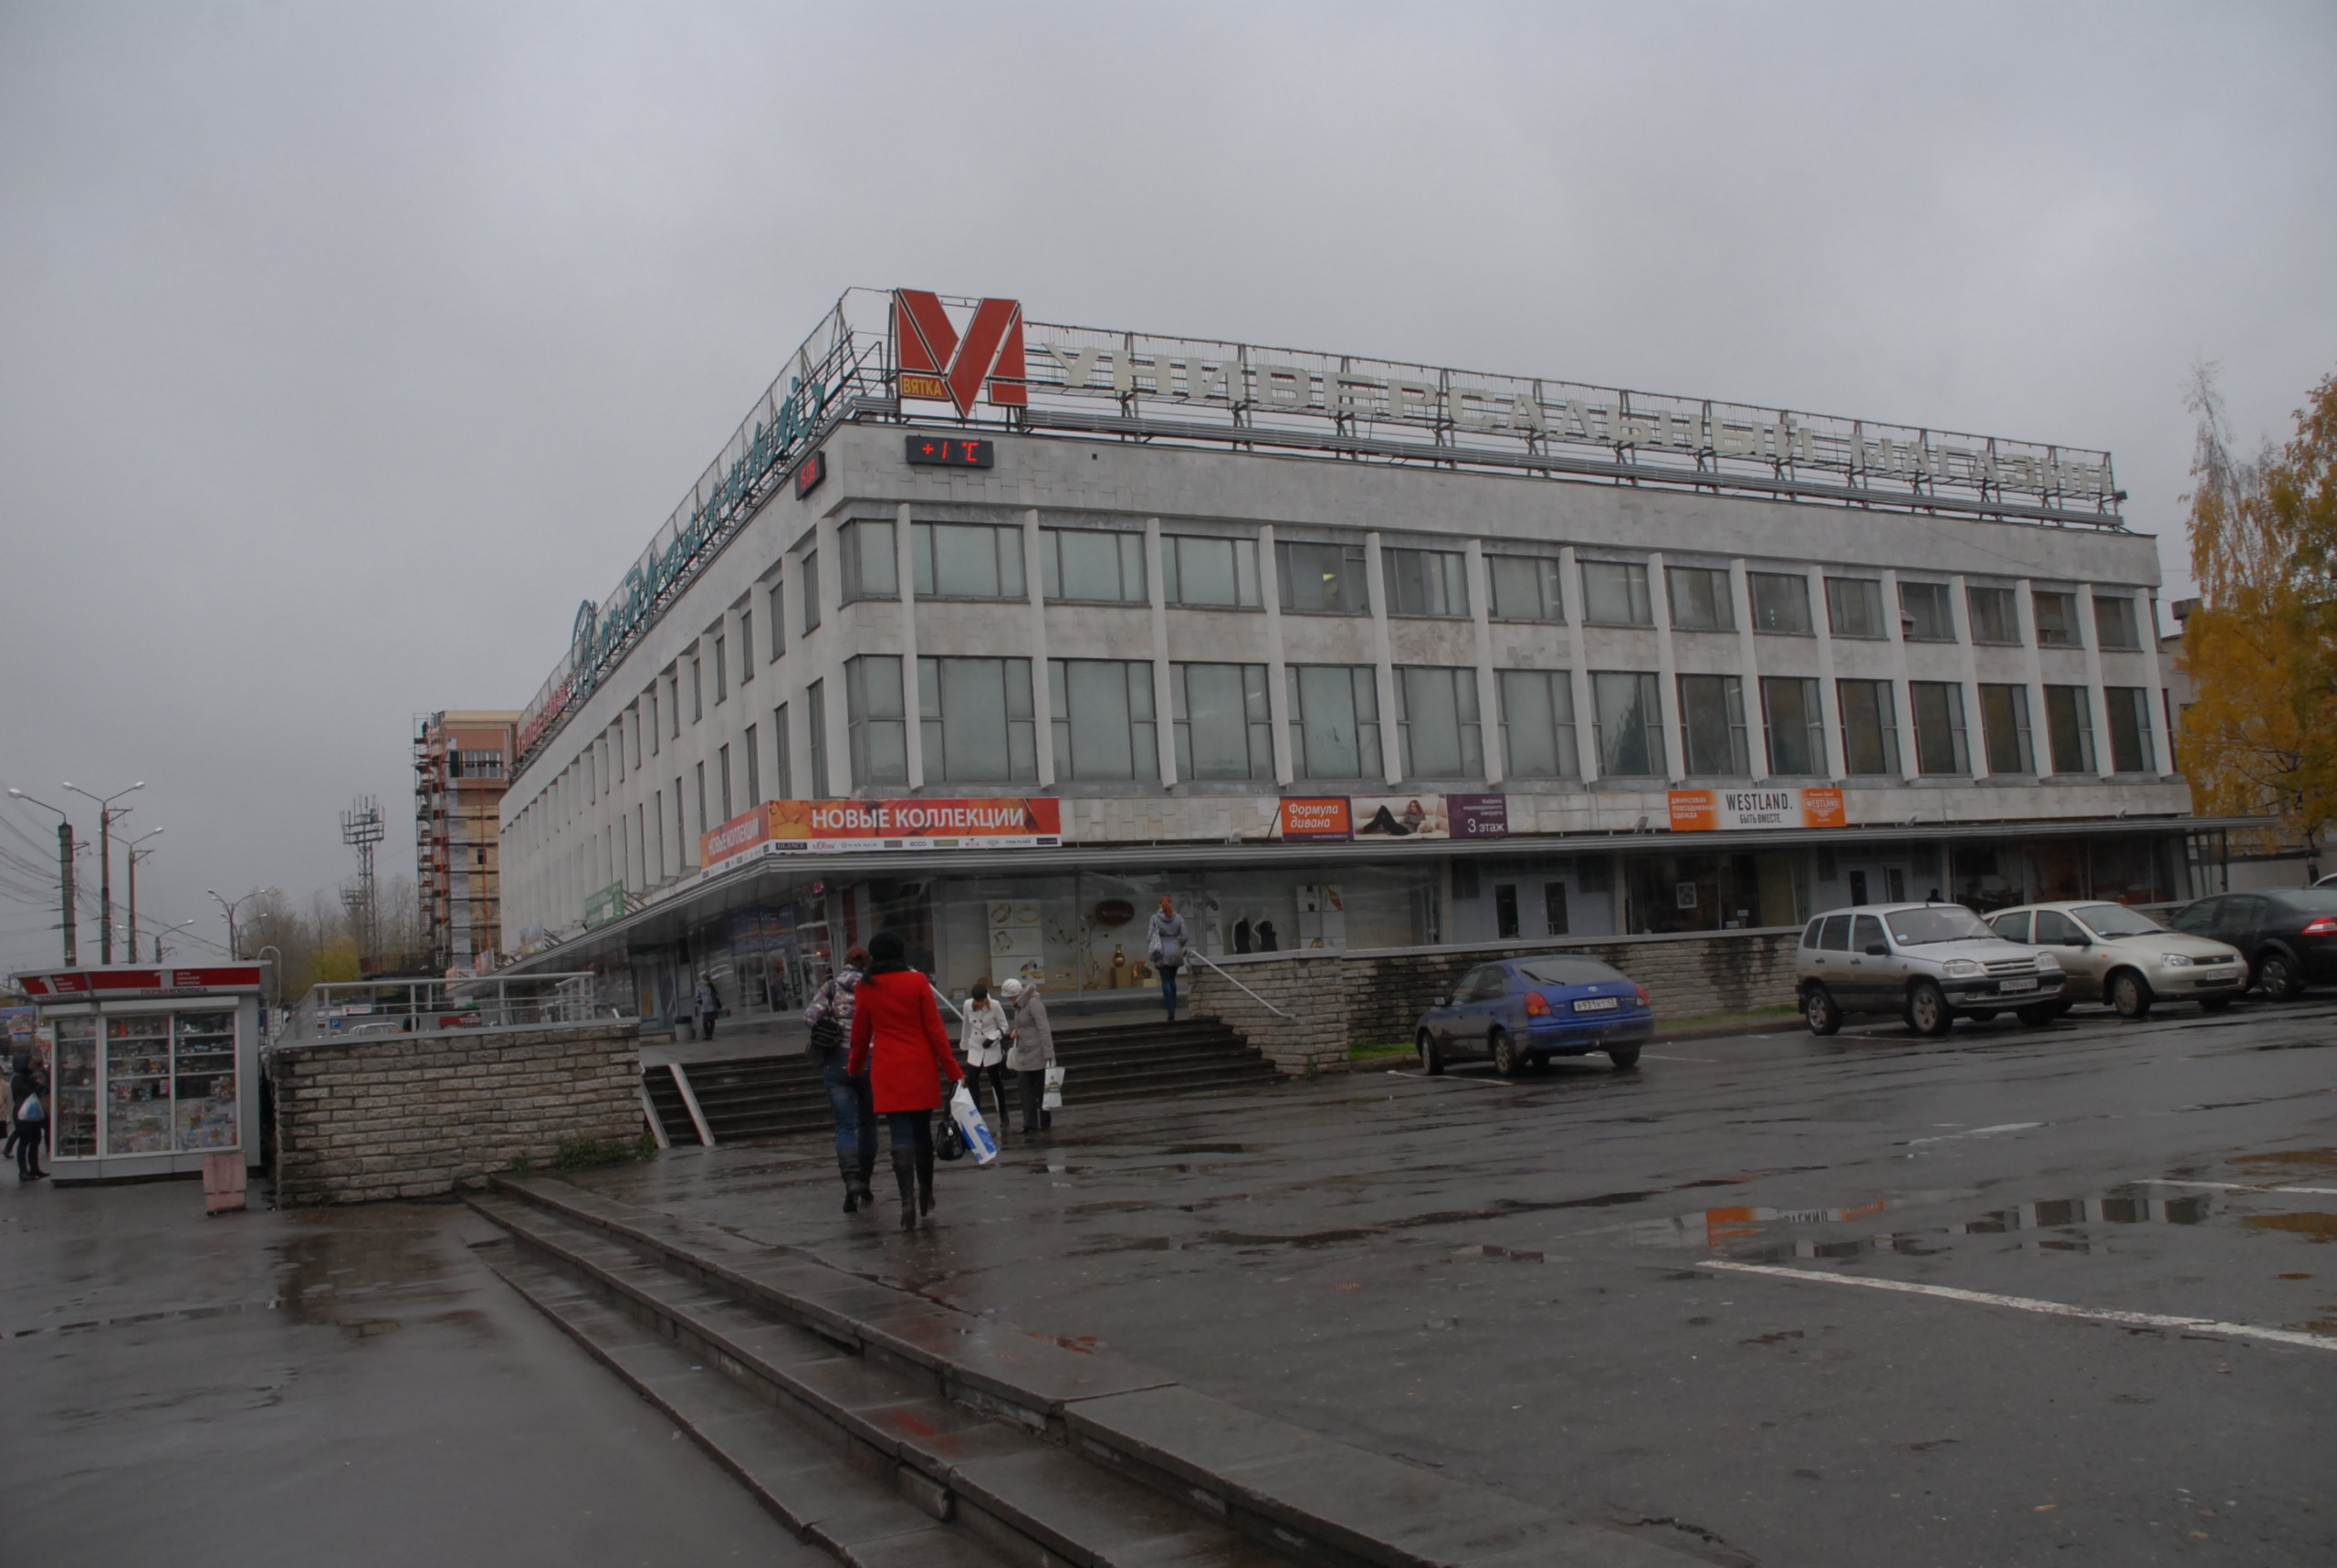 Кировский ЦУМ до реконструкции, октябрь 2010 года. В это время проект торгового центра только разрабатывался